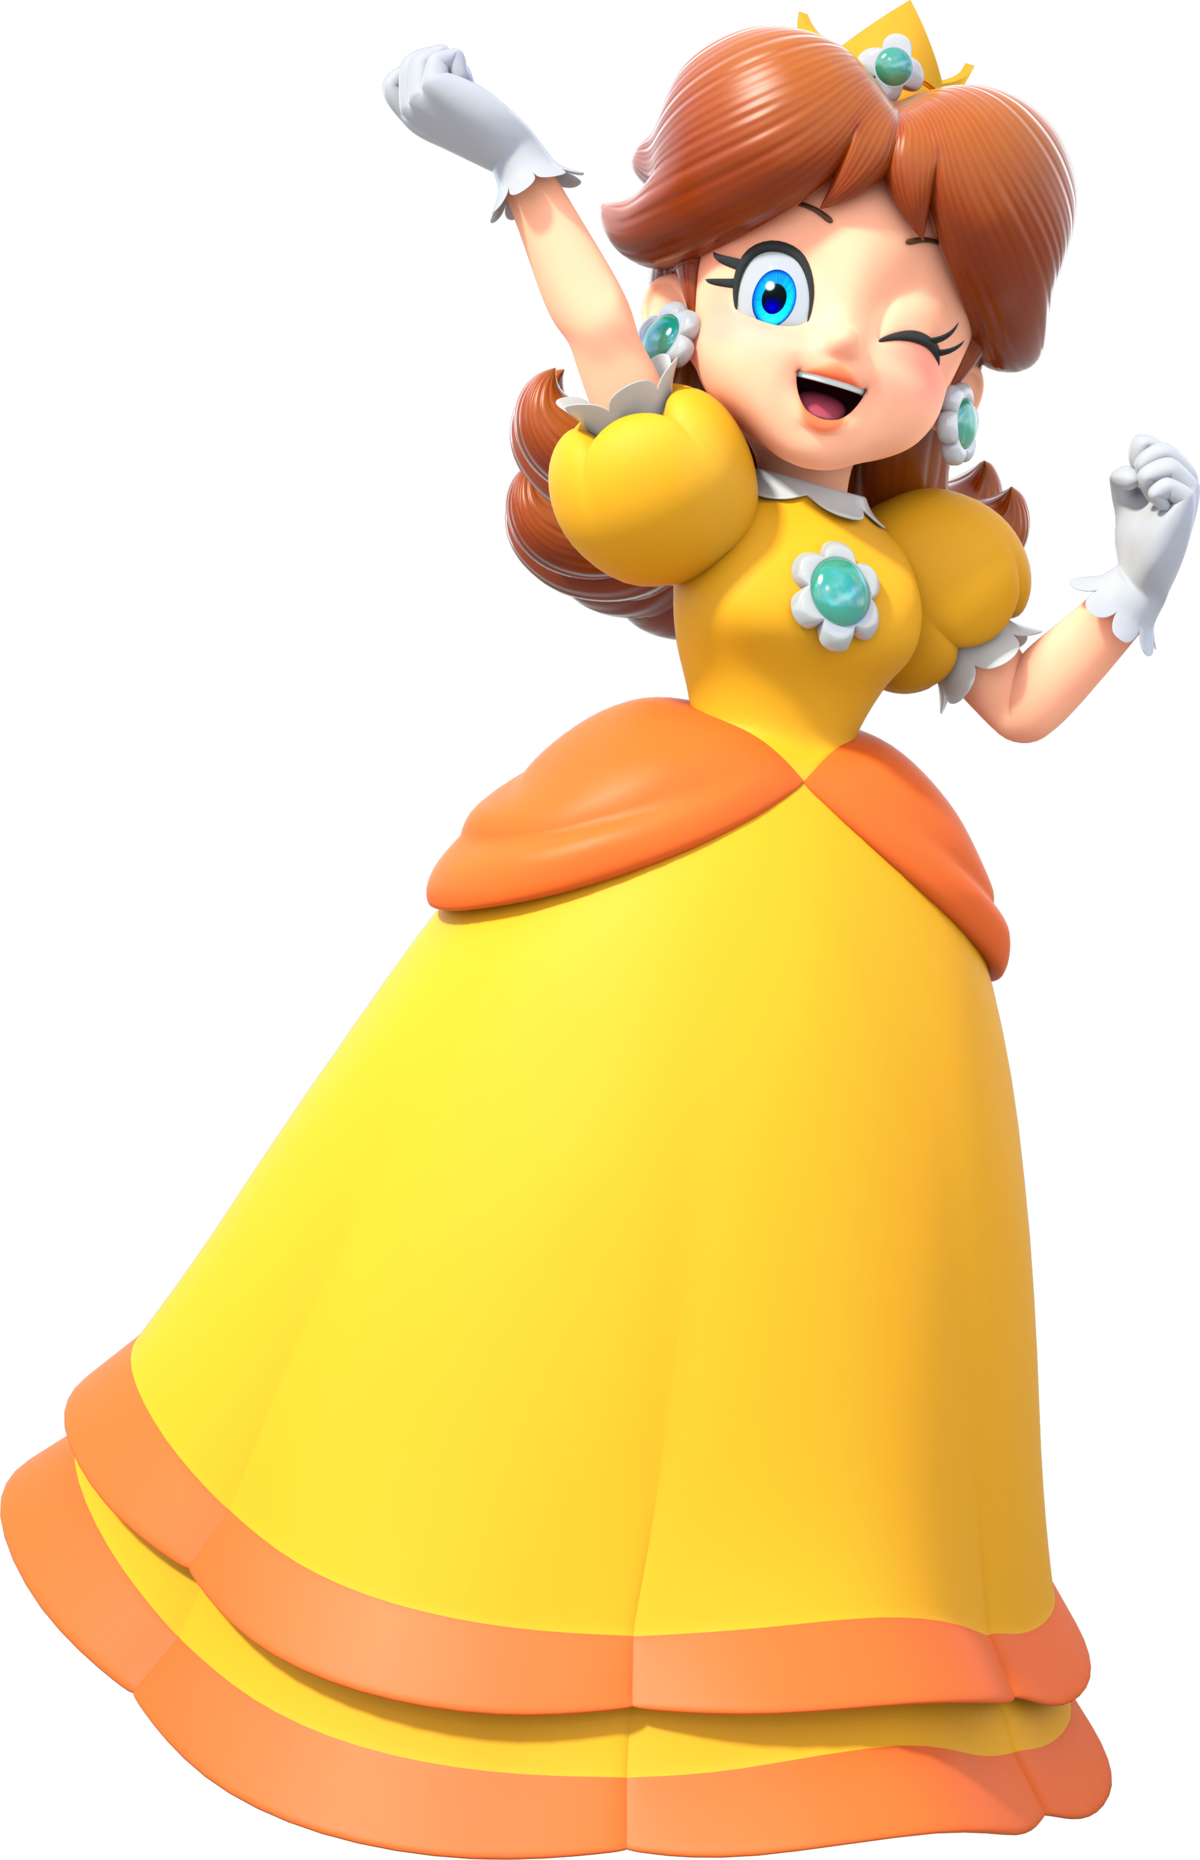 Princess Daisy Super Mario Wiki The Mario Encyclopedia